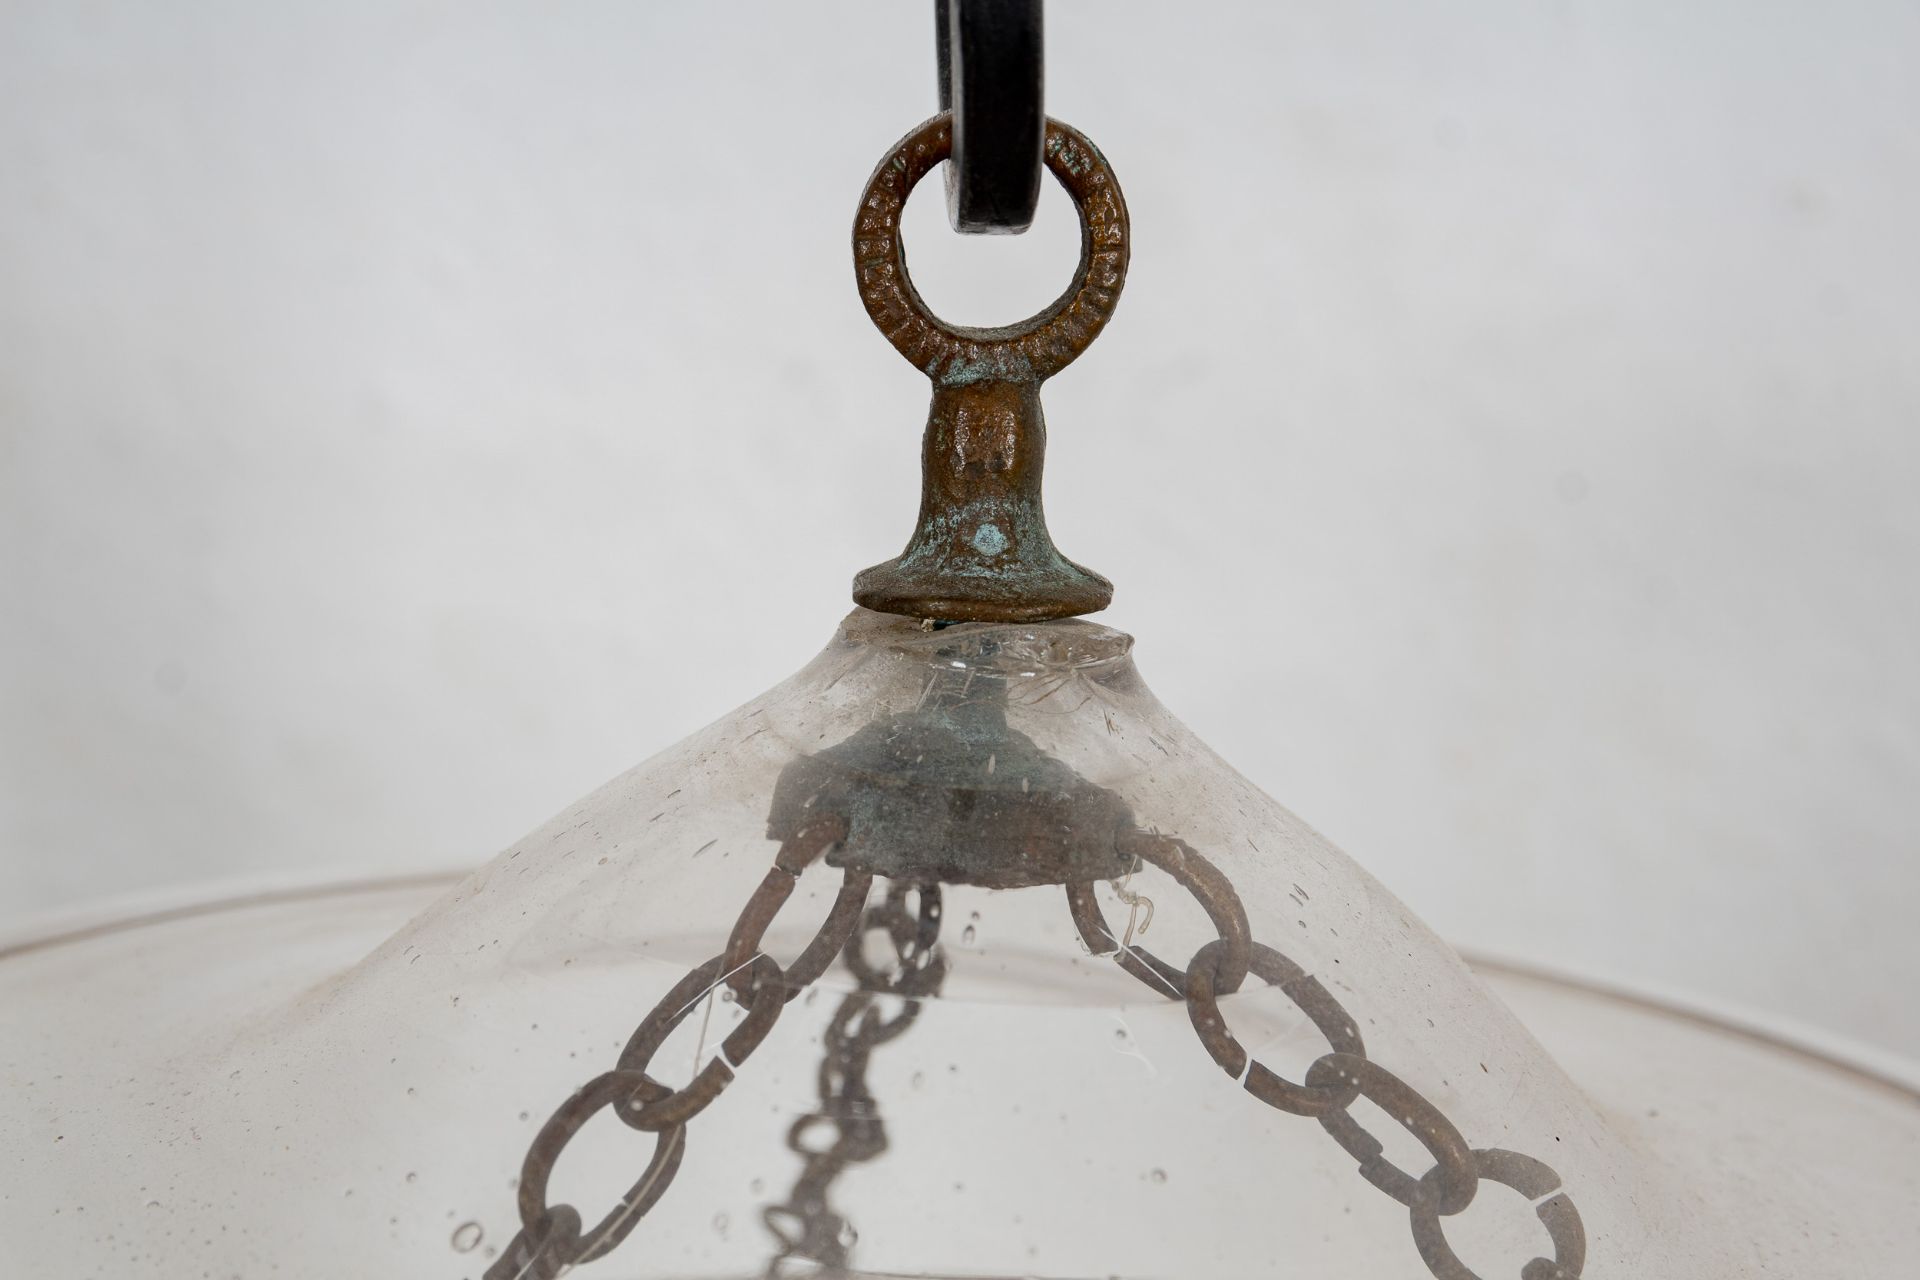 Antike Flurlampe für Kerzenfeuerung, zylindrischer, farbloser Glaskörper an metallischer Kettenaufh - Image 5 of 6